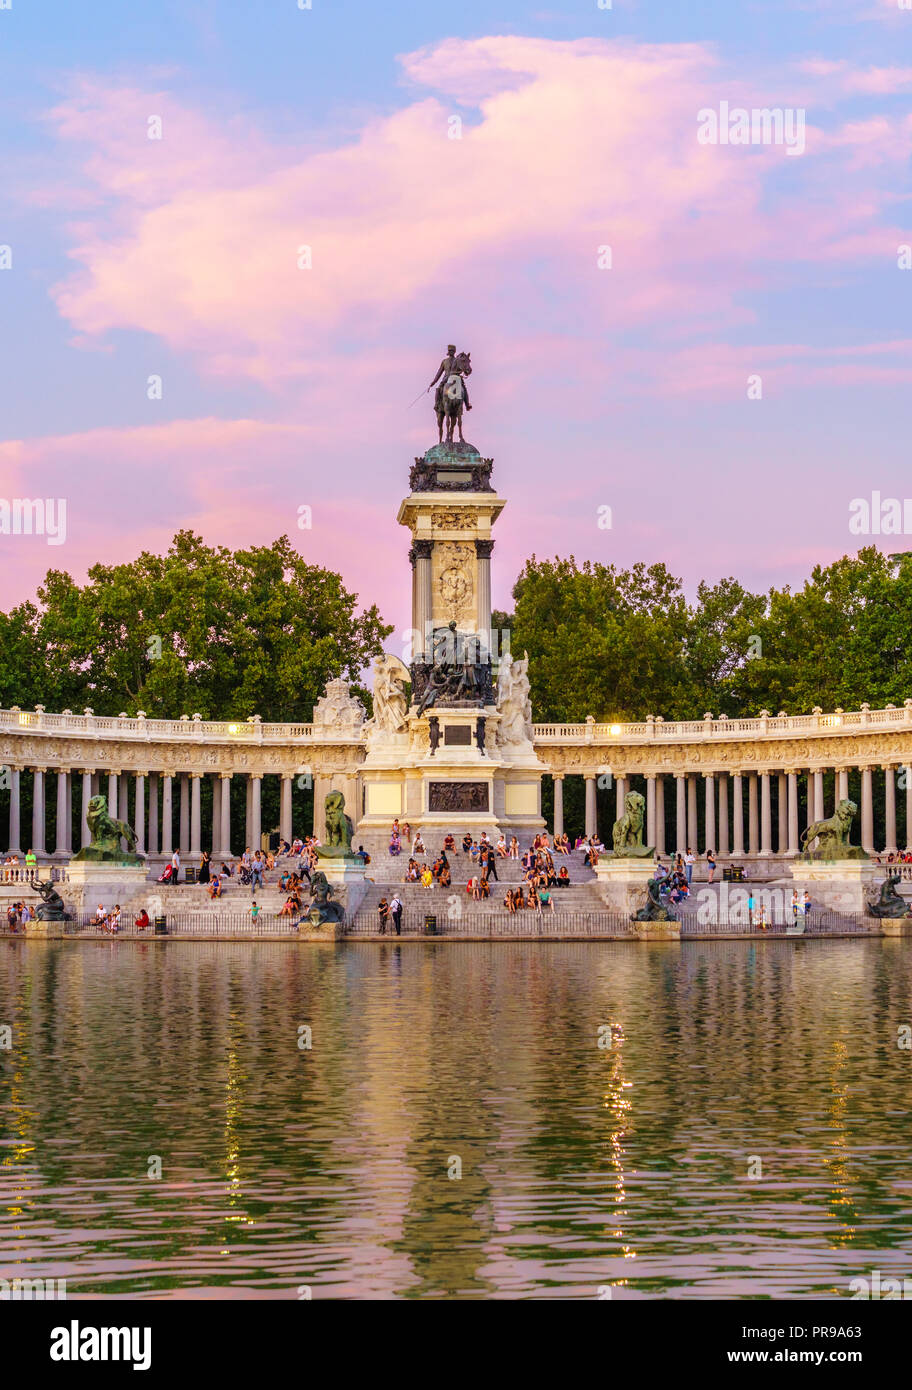 Der Retiro Park befindet sich im Zentrum von Madrid, Spanien. Sie gehörte der spanischen Monarchie bis zum Ende des 19. Jahrhunderts, jetzt ist es ein öffentlicher Park. Stockfoto